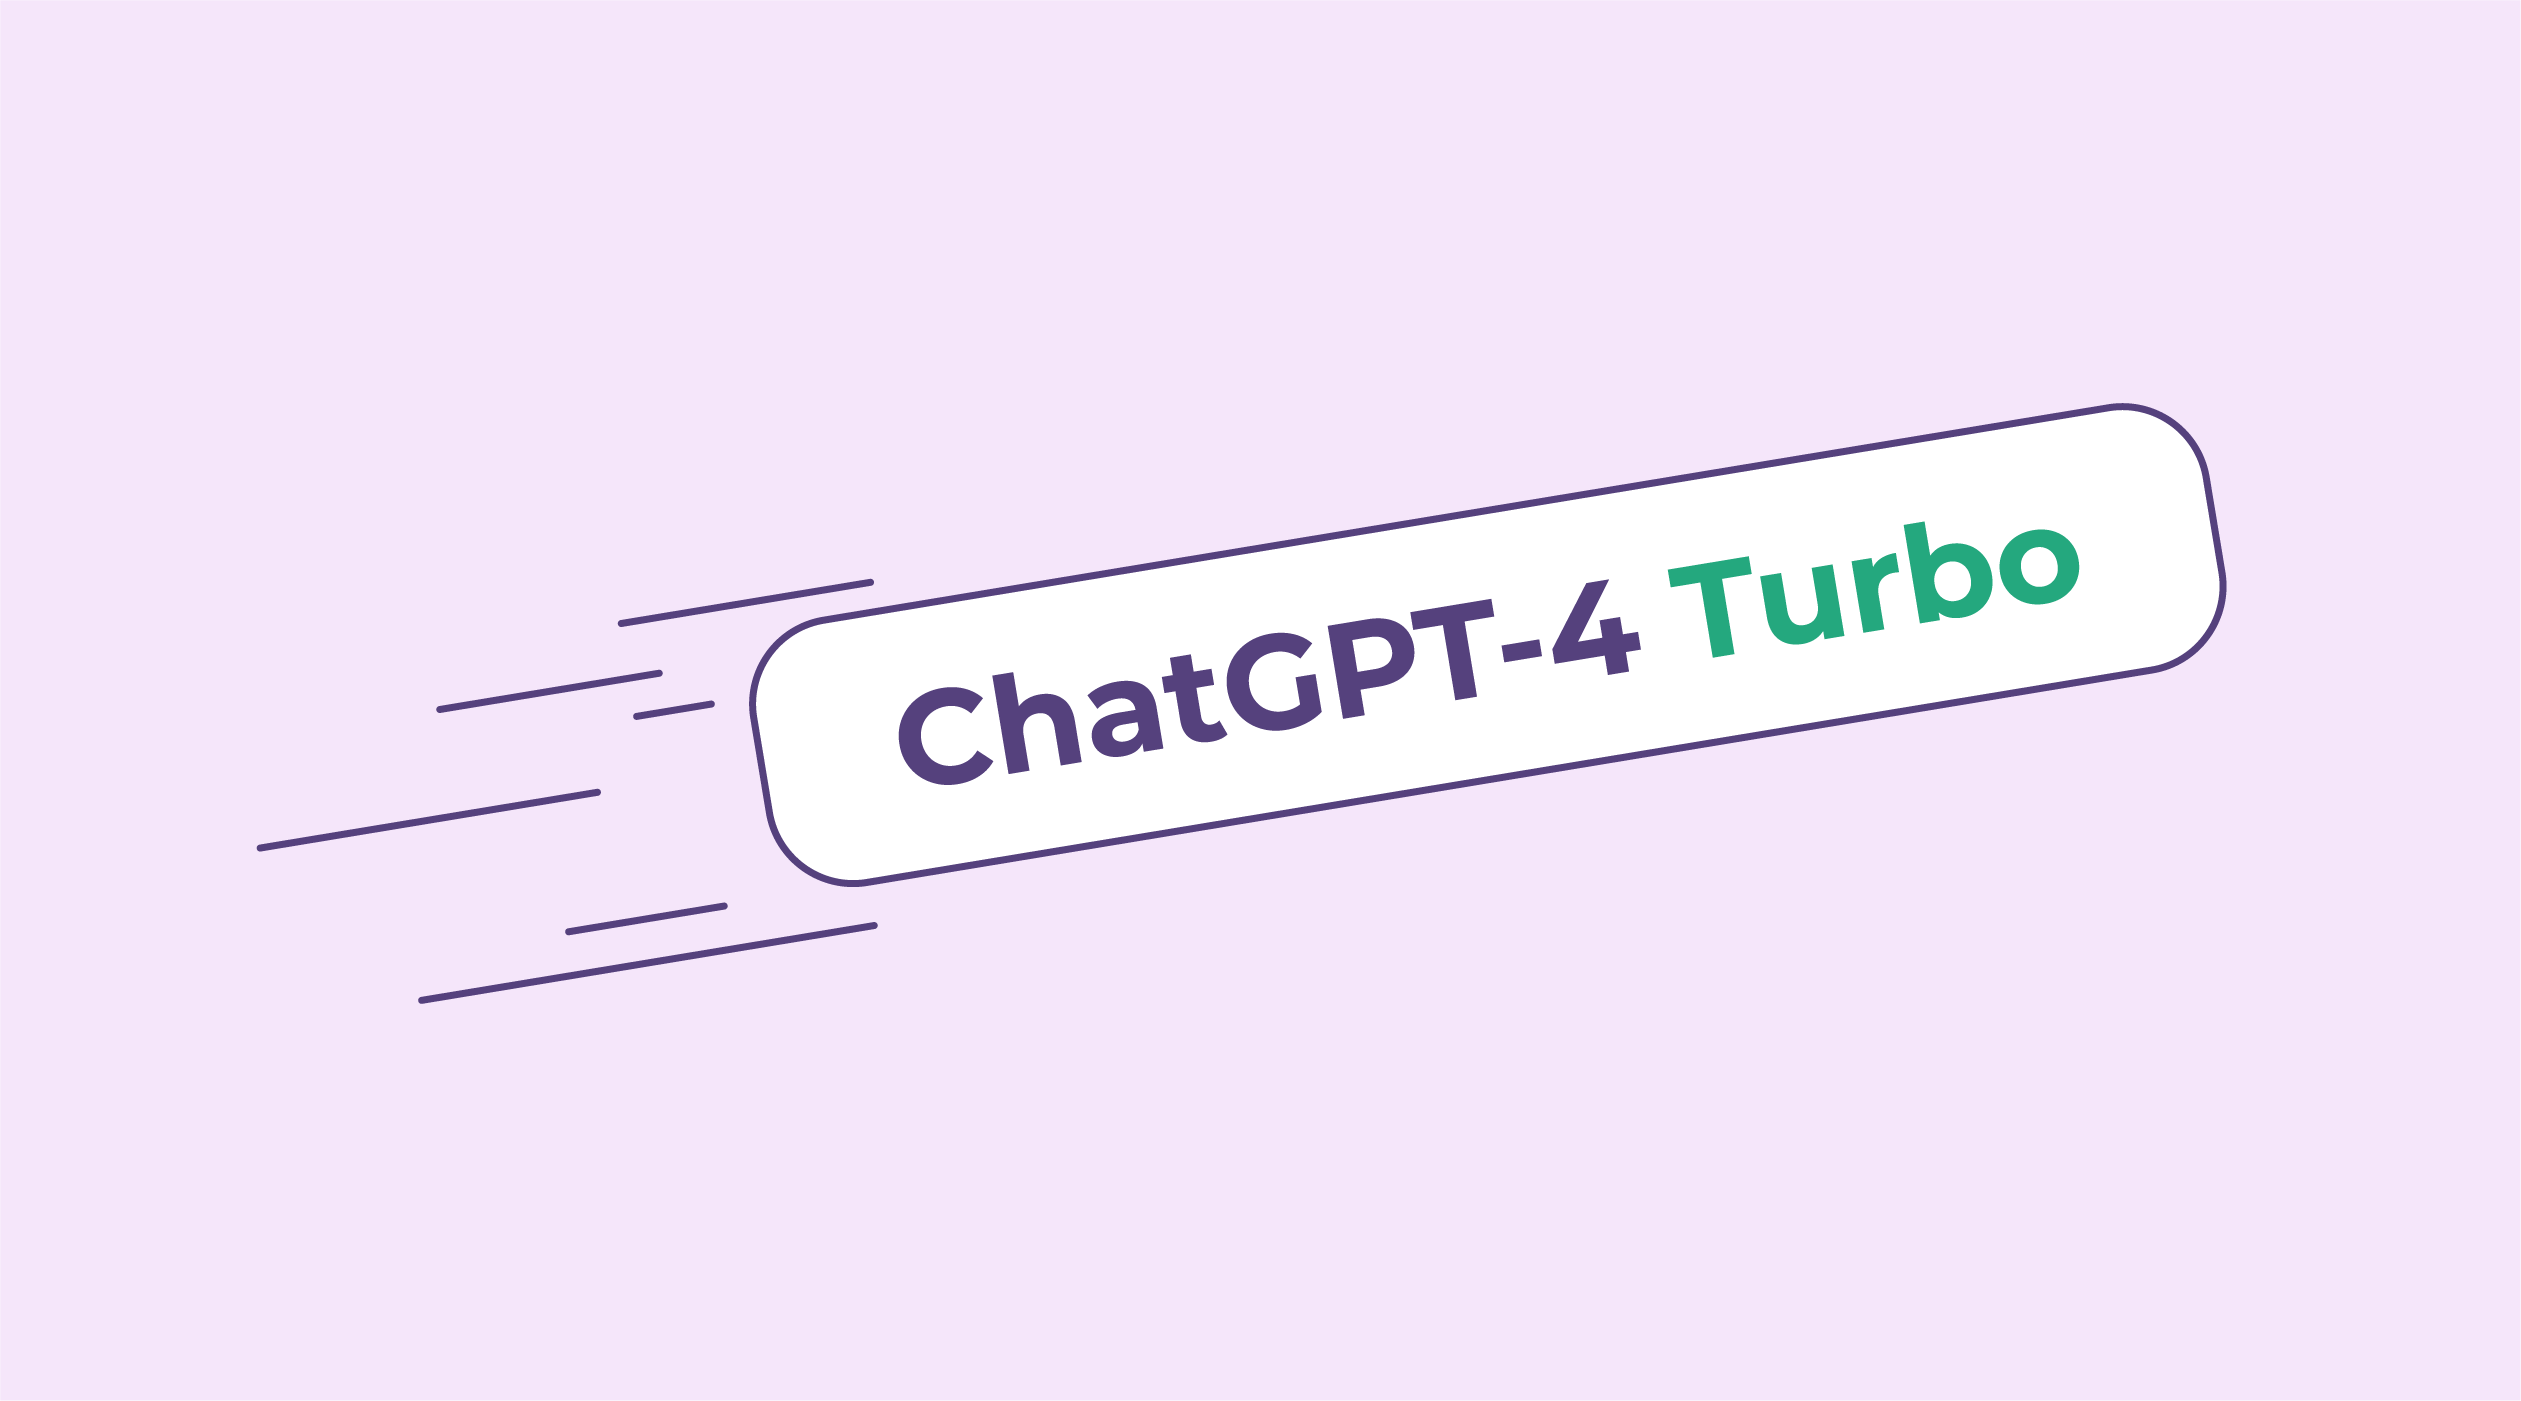 Nya ChatGPT-4 Turbo, allt du behöver veta